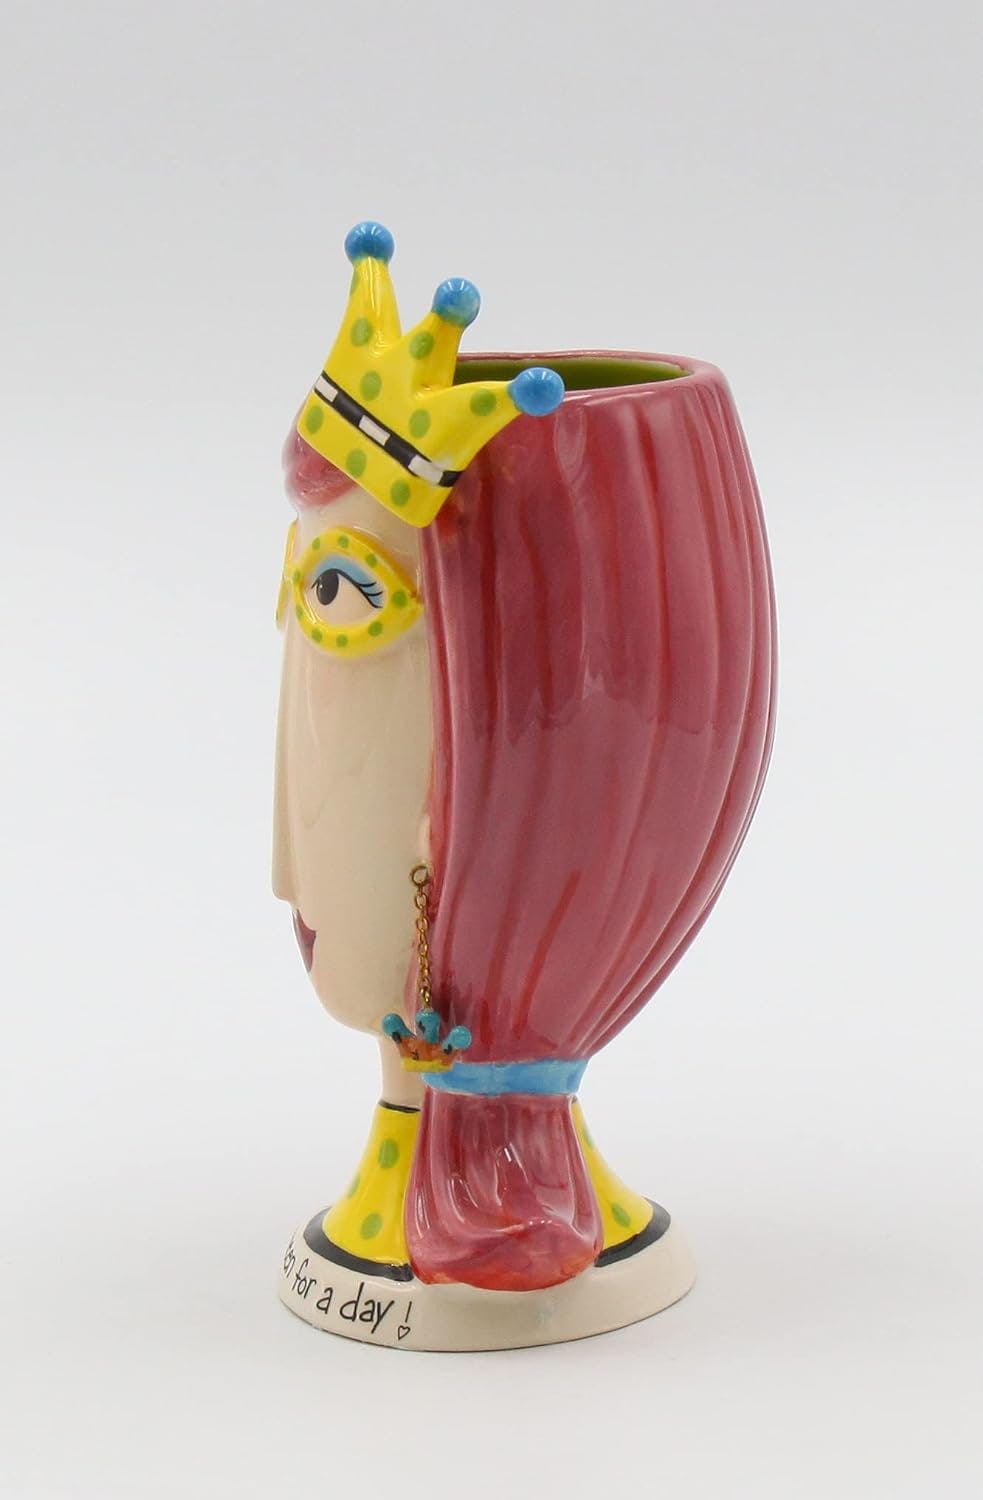 Sassy Chic 8.5'' Ceramic Beauty Queen Vase & Brush Holder